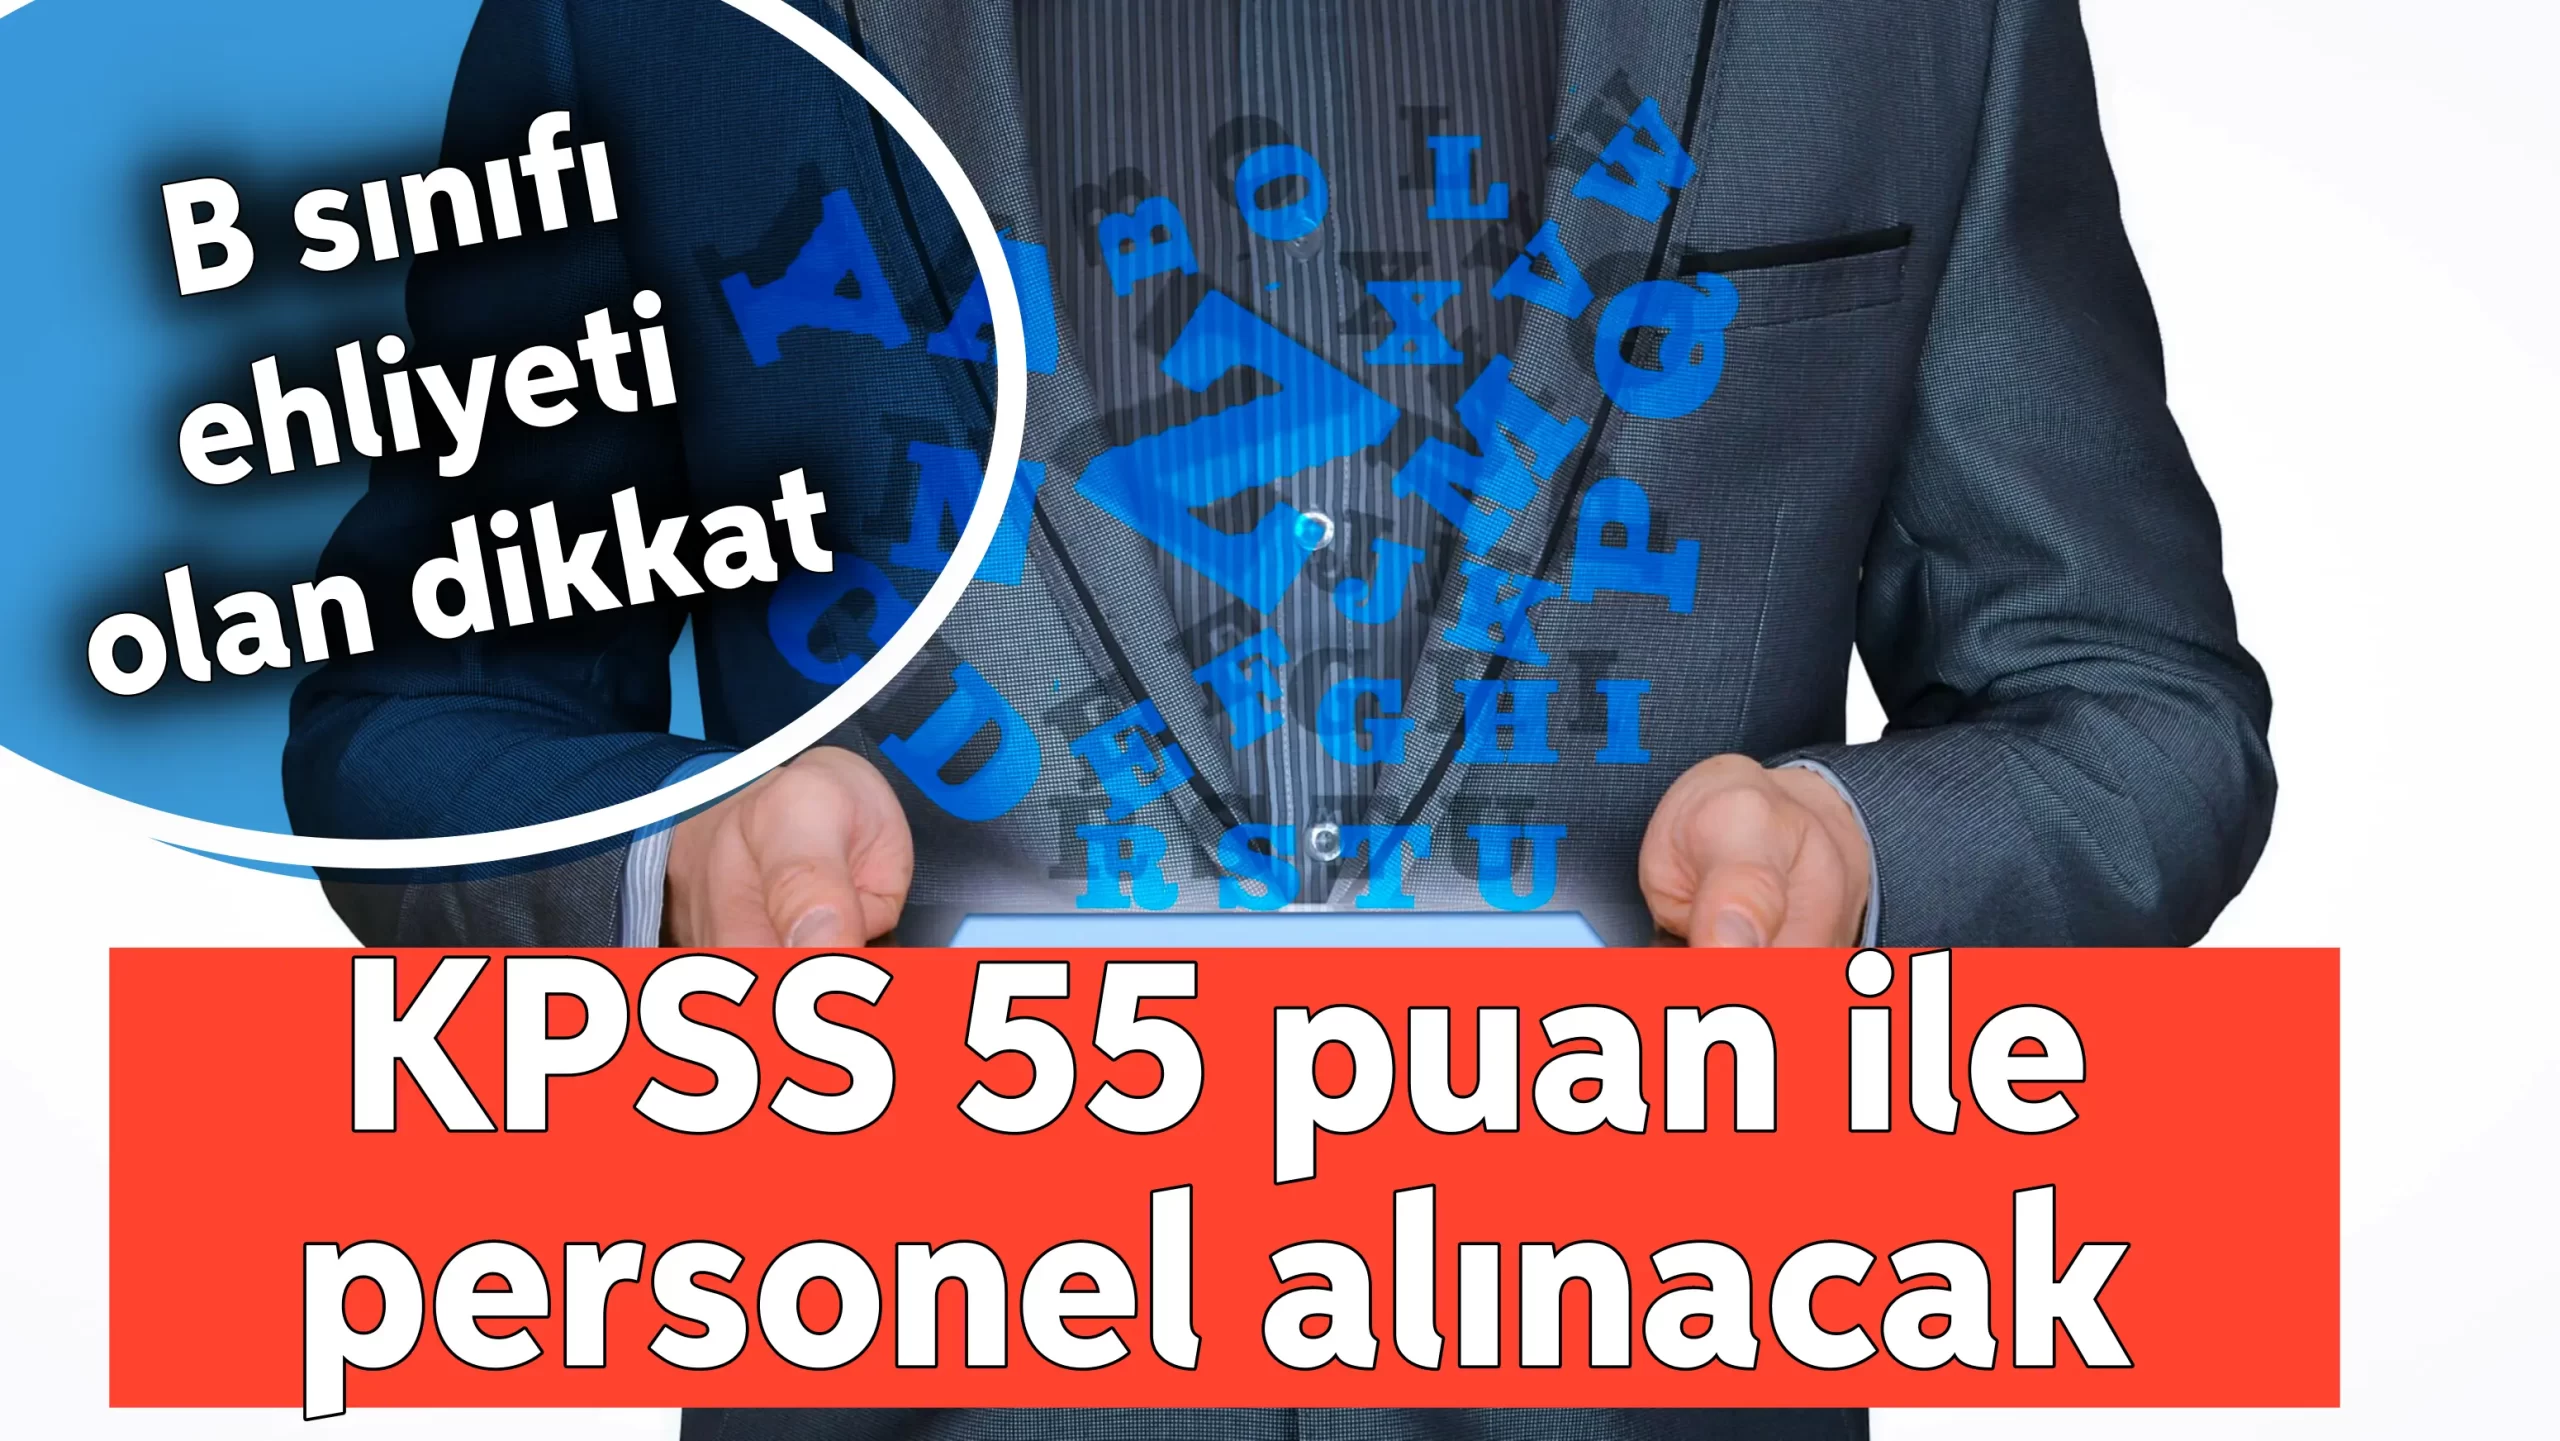 B ehliyetli KPSS 55 memur alınacak: İkamet şartı yok